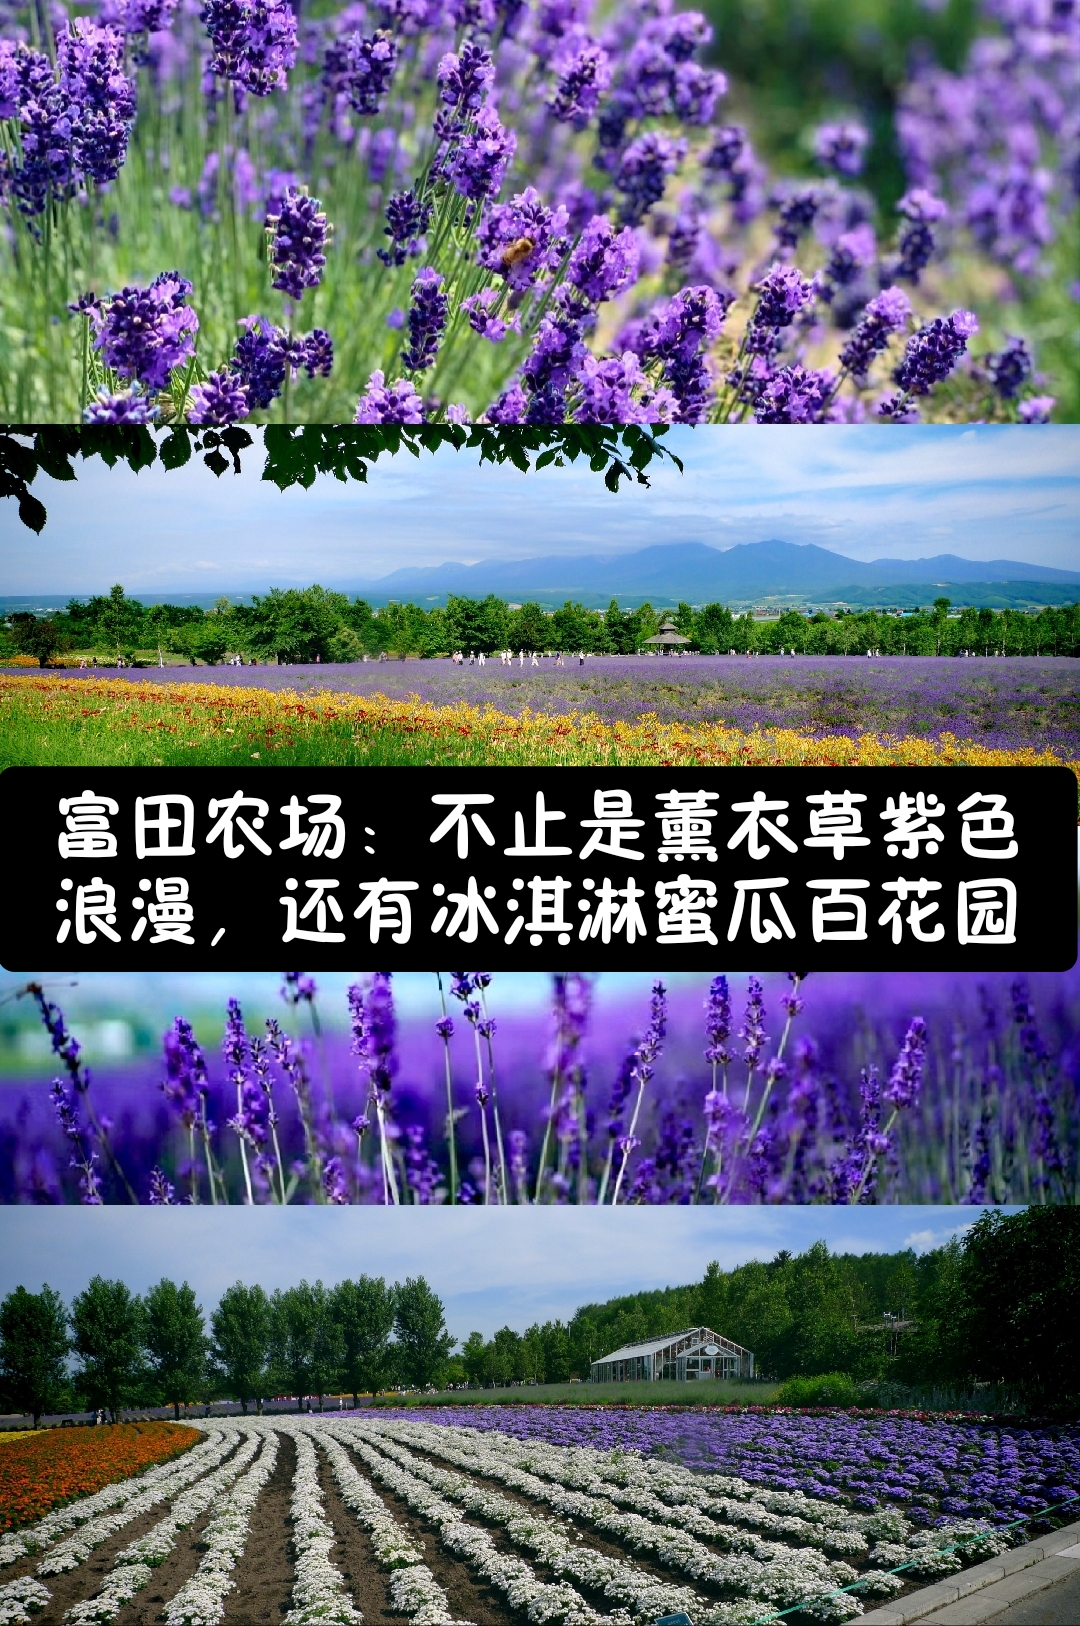 【夏花绚烂】富田农场不止薰衣草紫色浪漫，还有冰淇淋蜜瓜百花园